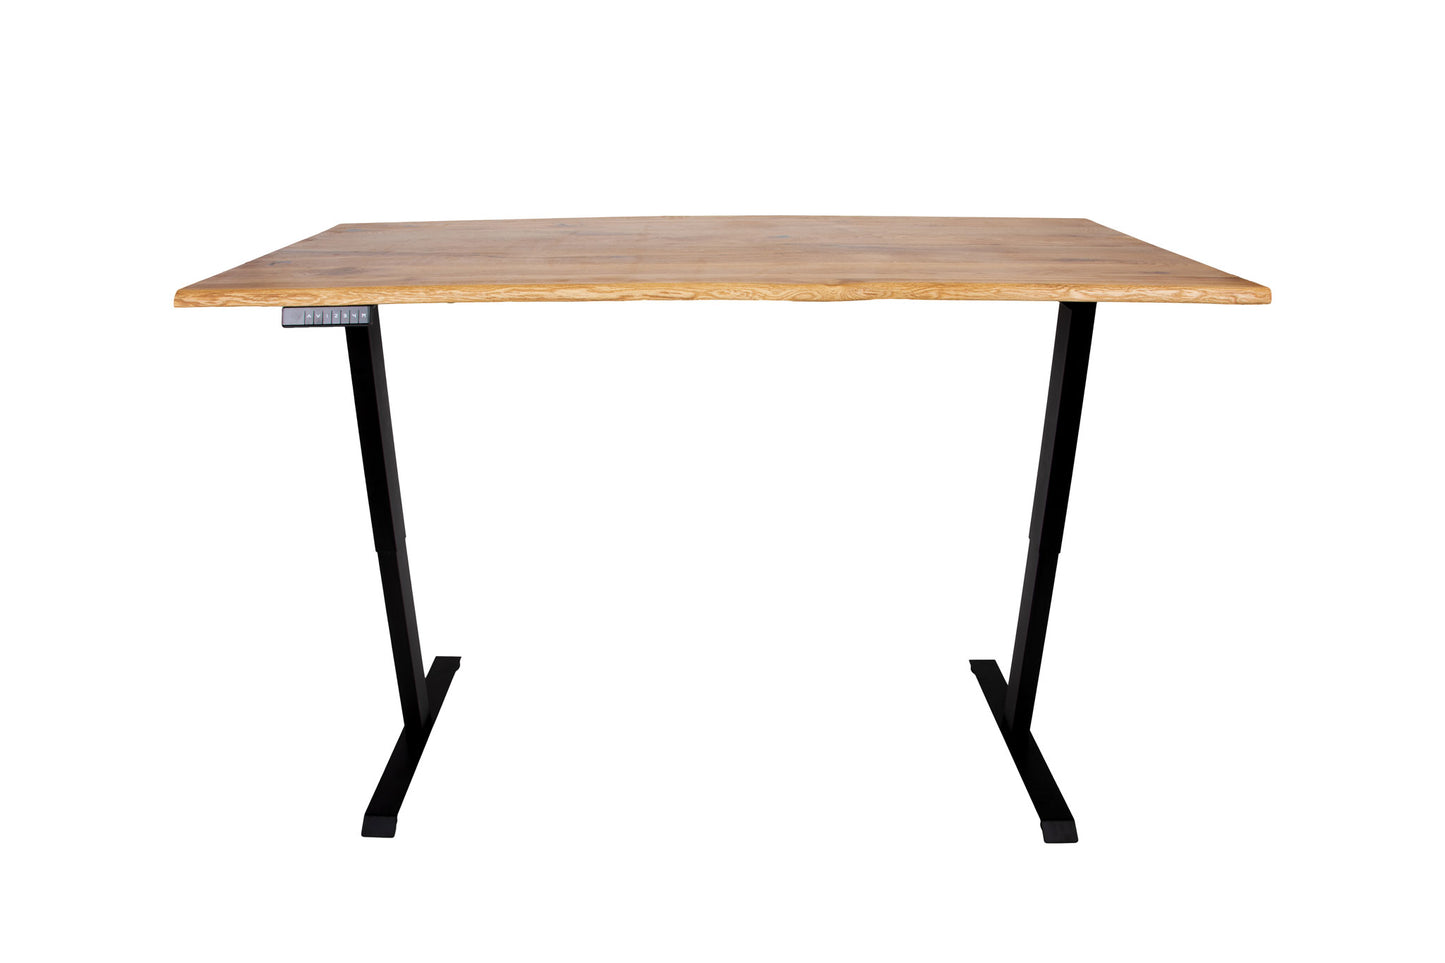 Schreibtisch Eiche mit Baumkante 140 bis 200cm - elektrisch höhenverstellbar